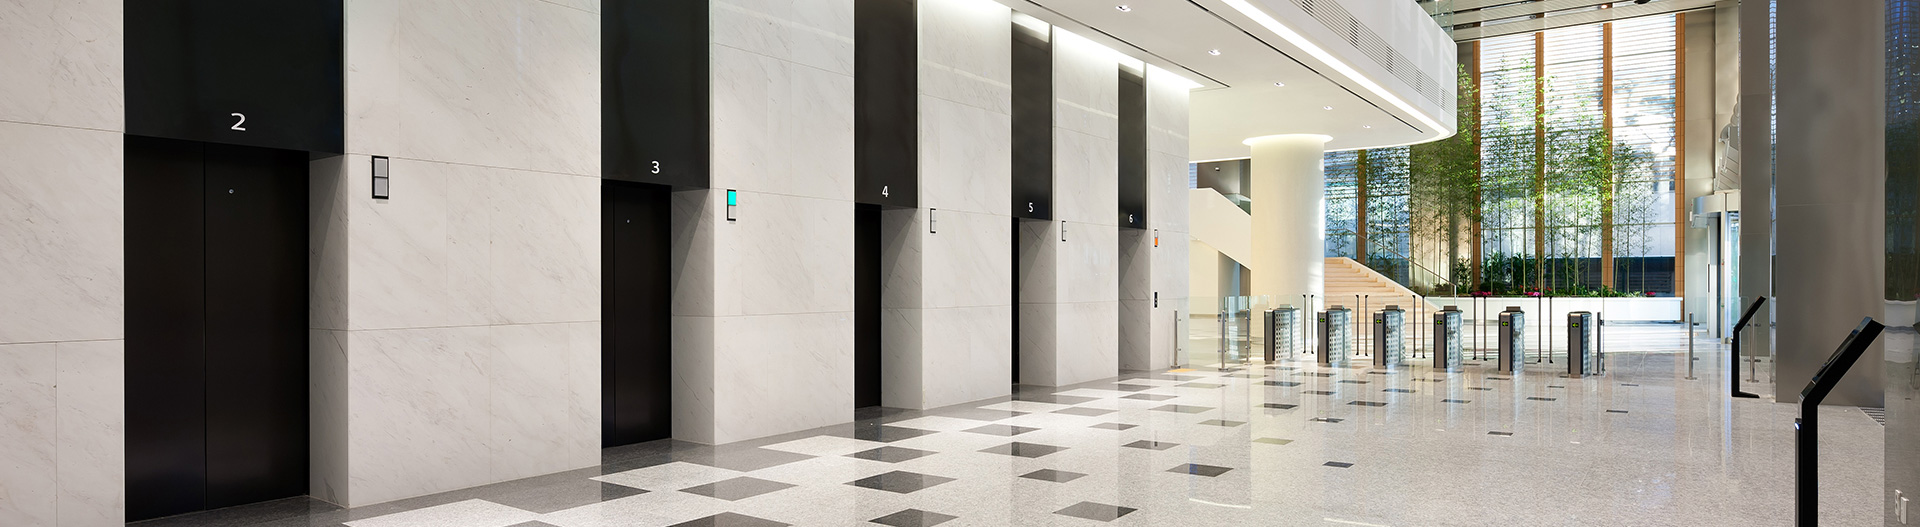 Double-deck – сверхскоростные двухэтажные лифты